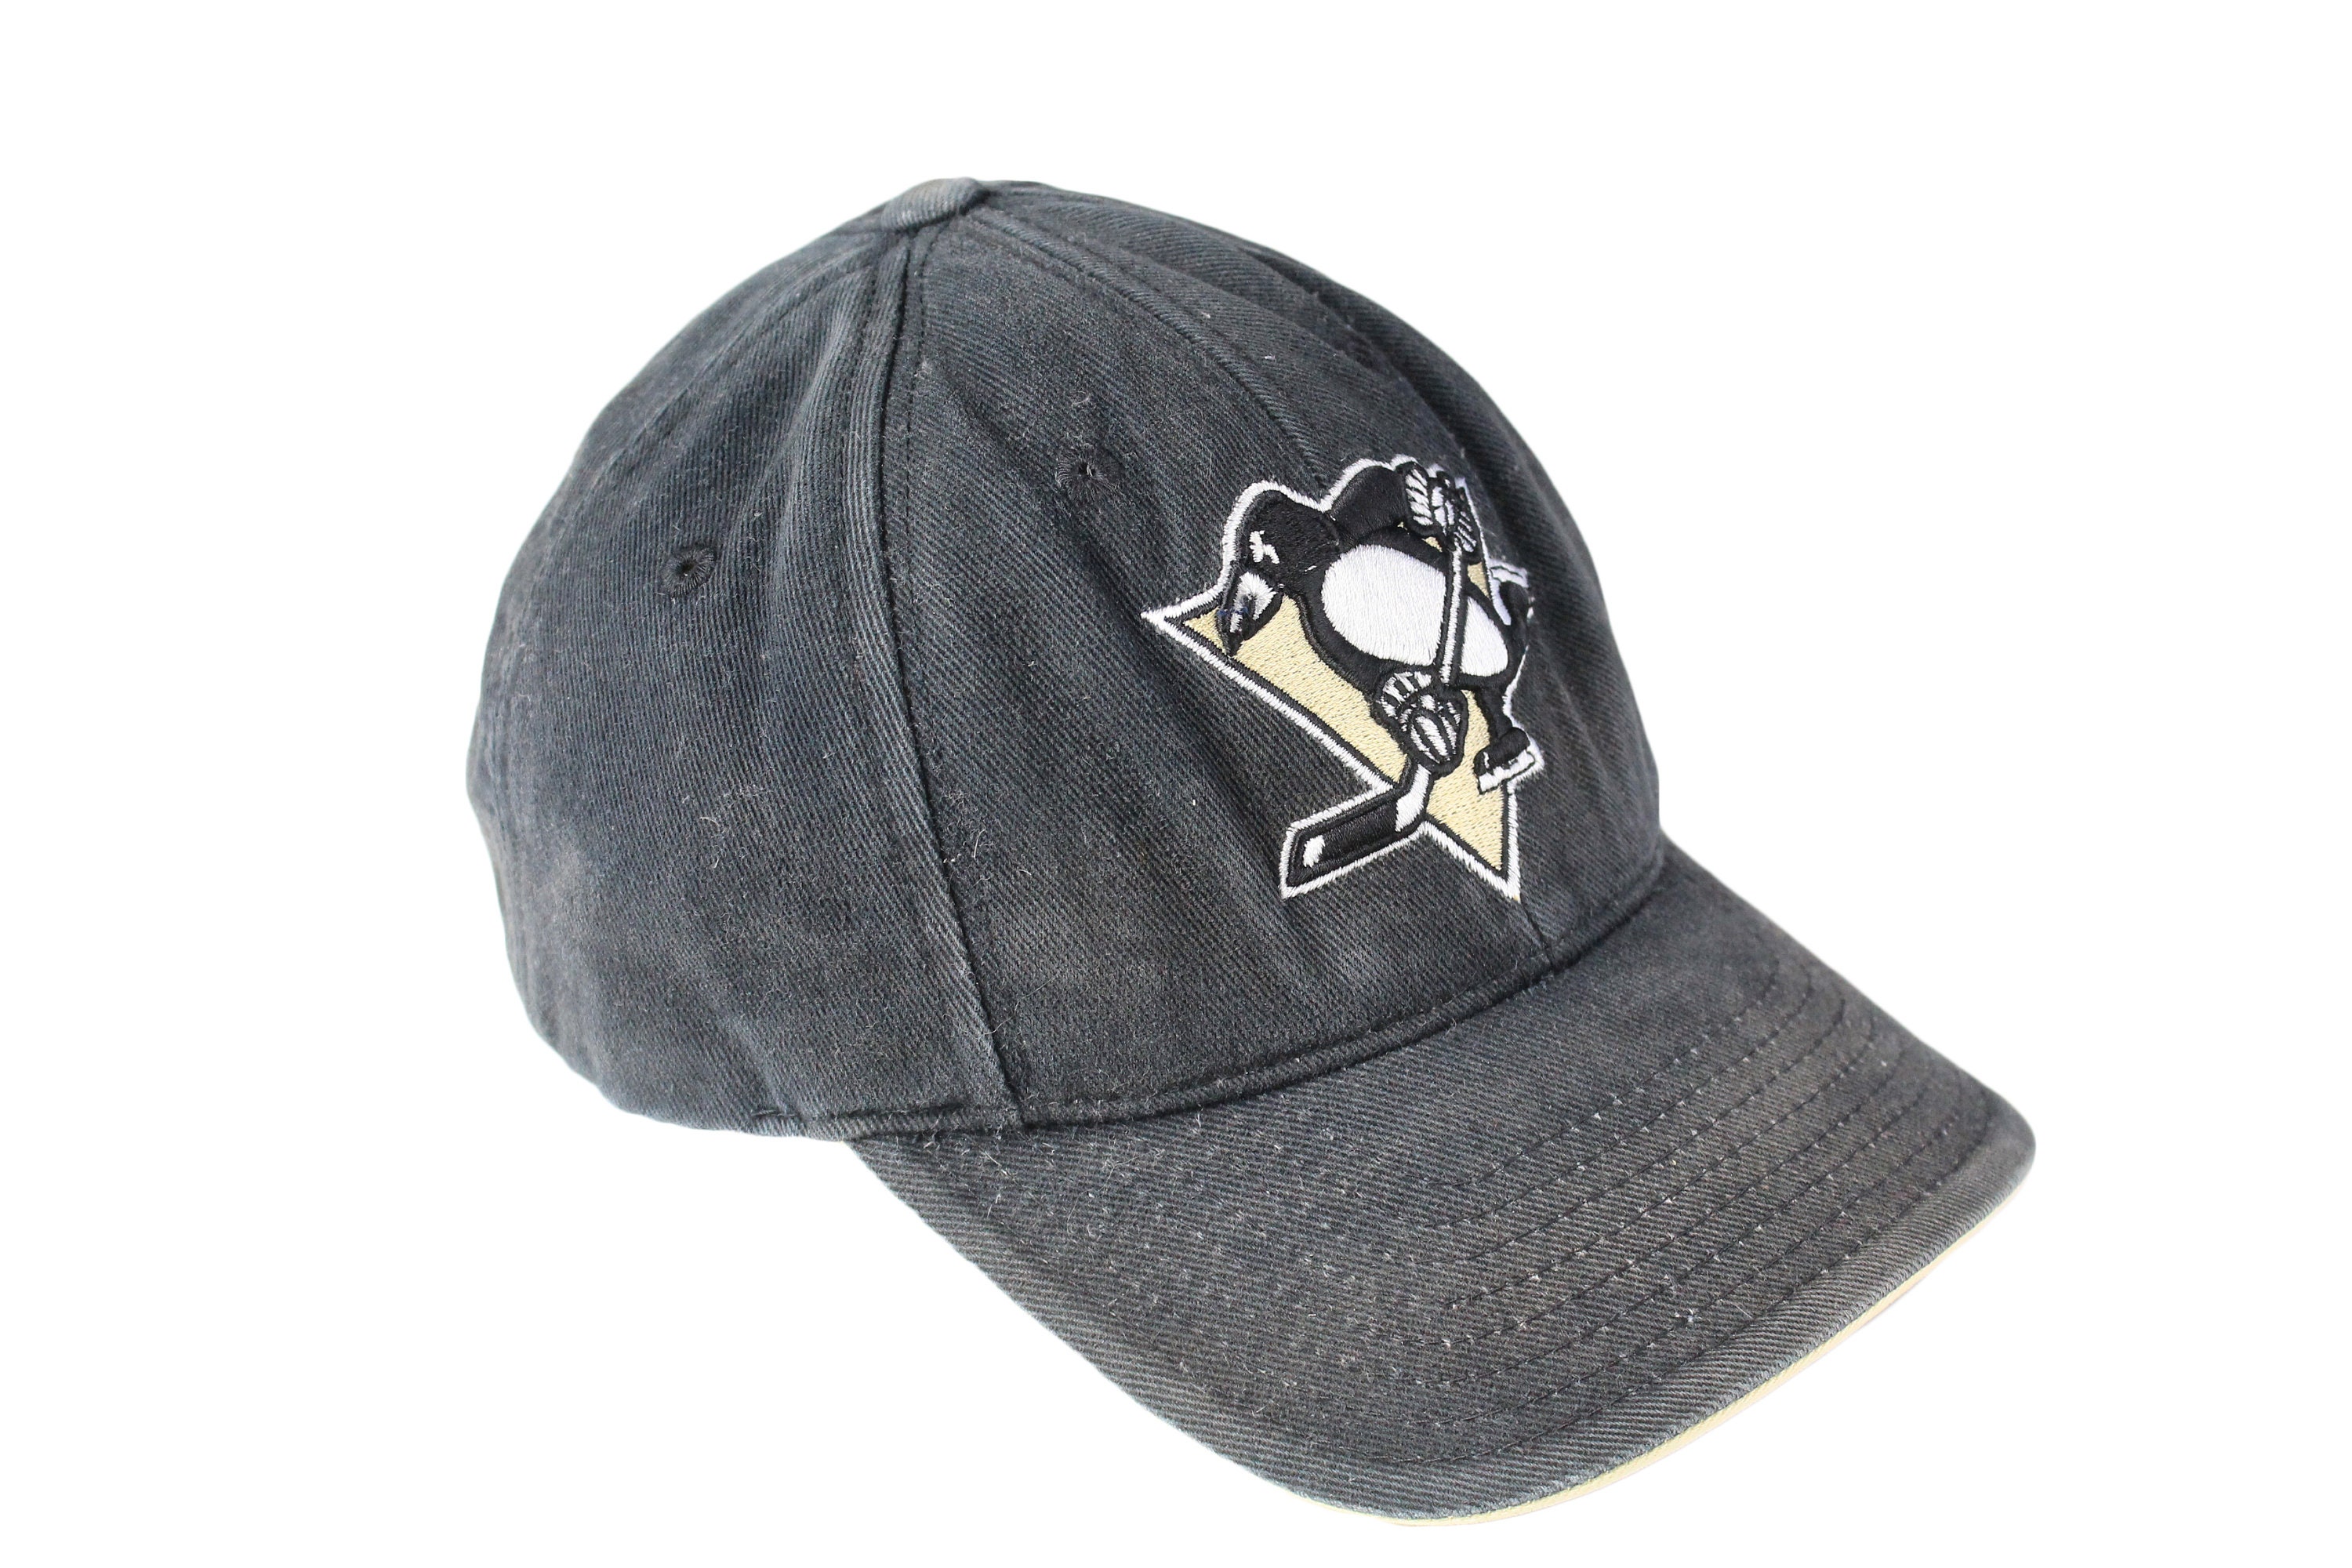 Vintage NHL Stitched Pittsburgh Penguins Hat Great - Depop